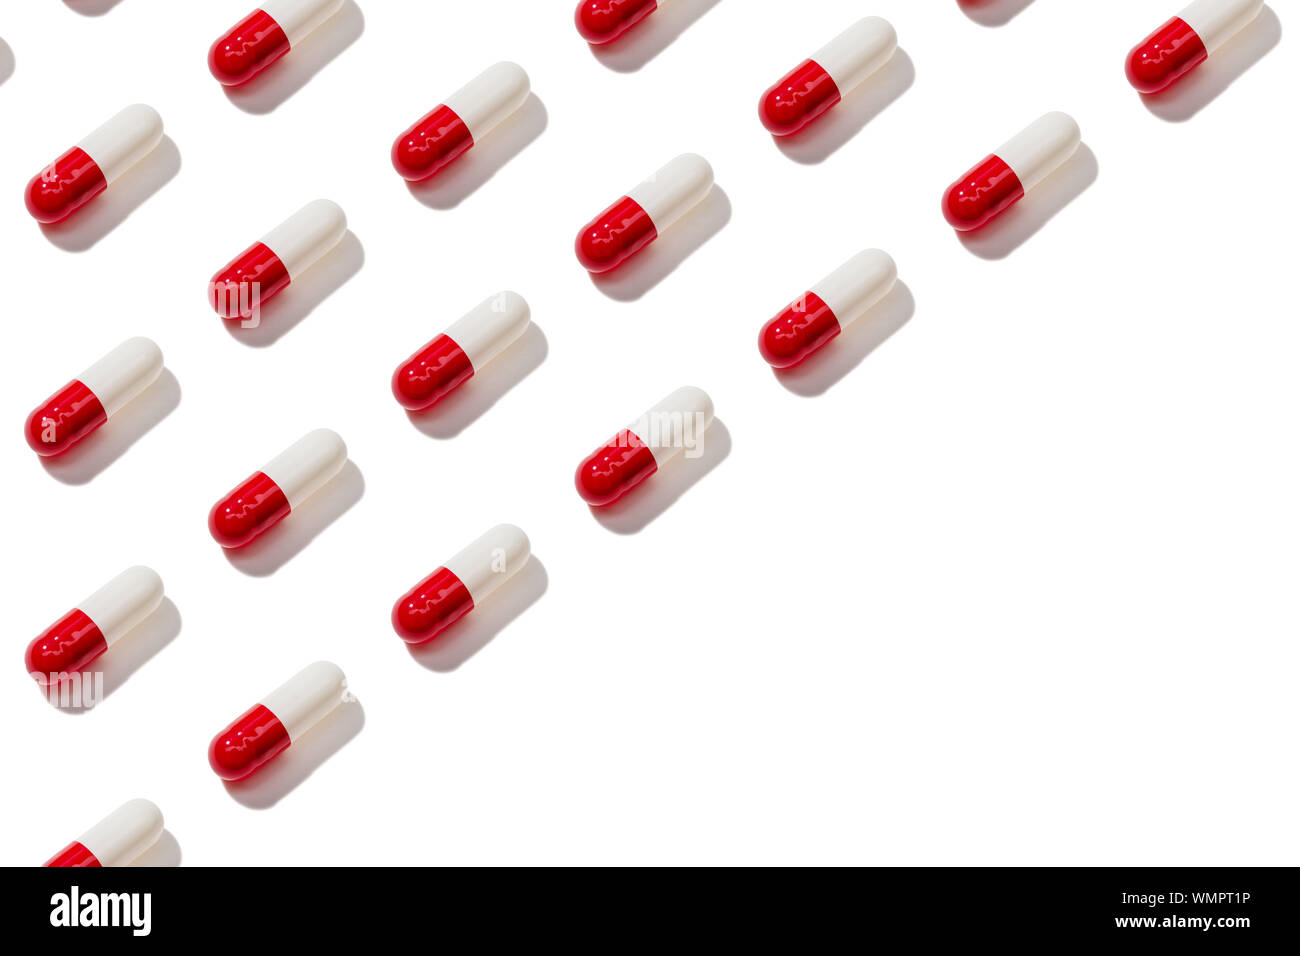 Confetto capsula pattern isolati su sfondo bianco. Medicina, sanità e concetto di farmacia Foto Stock